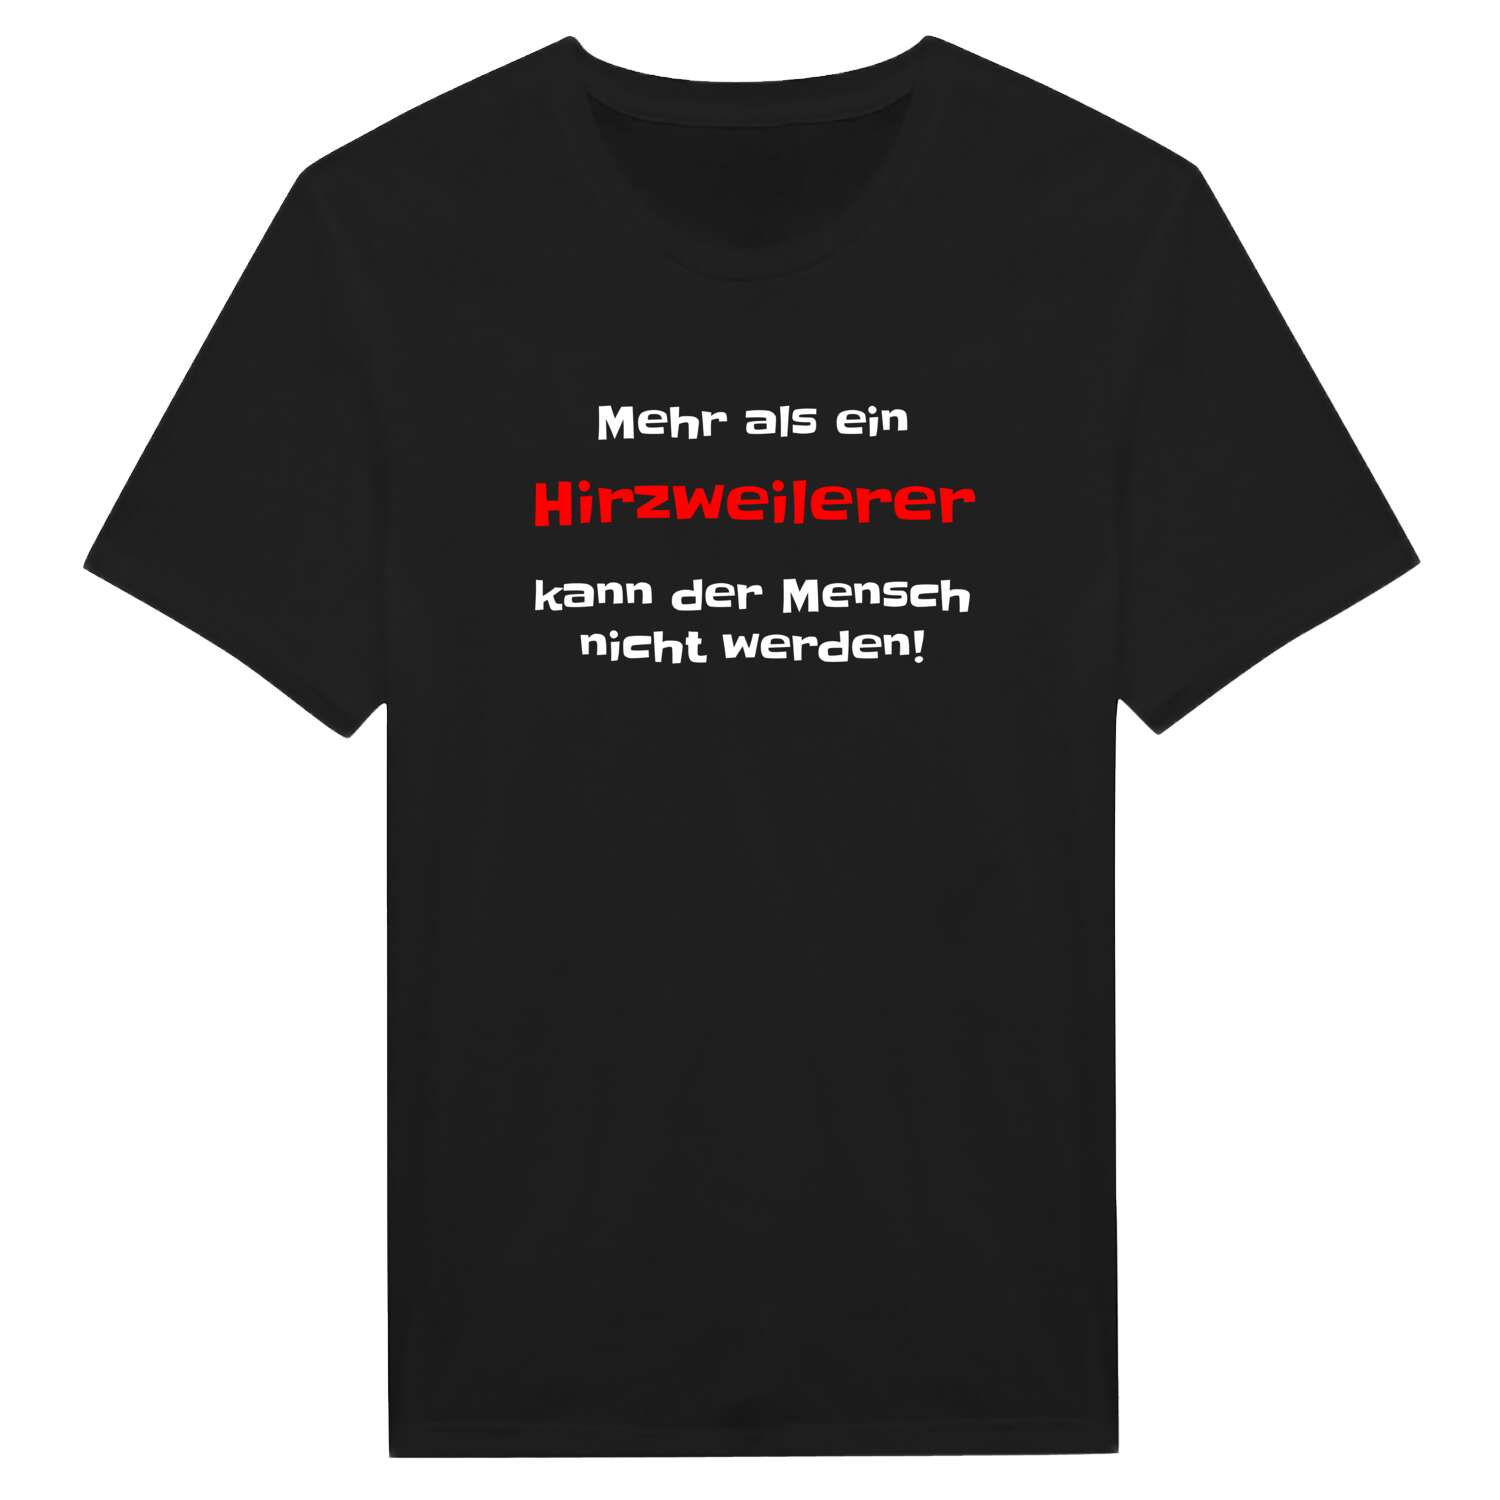 Hirzweiler T-Shirt »Mehr als ein«